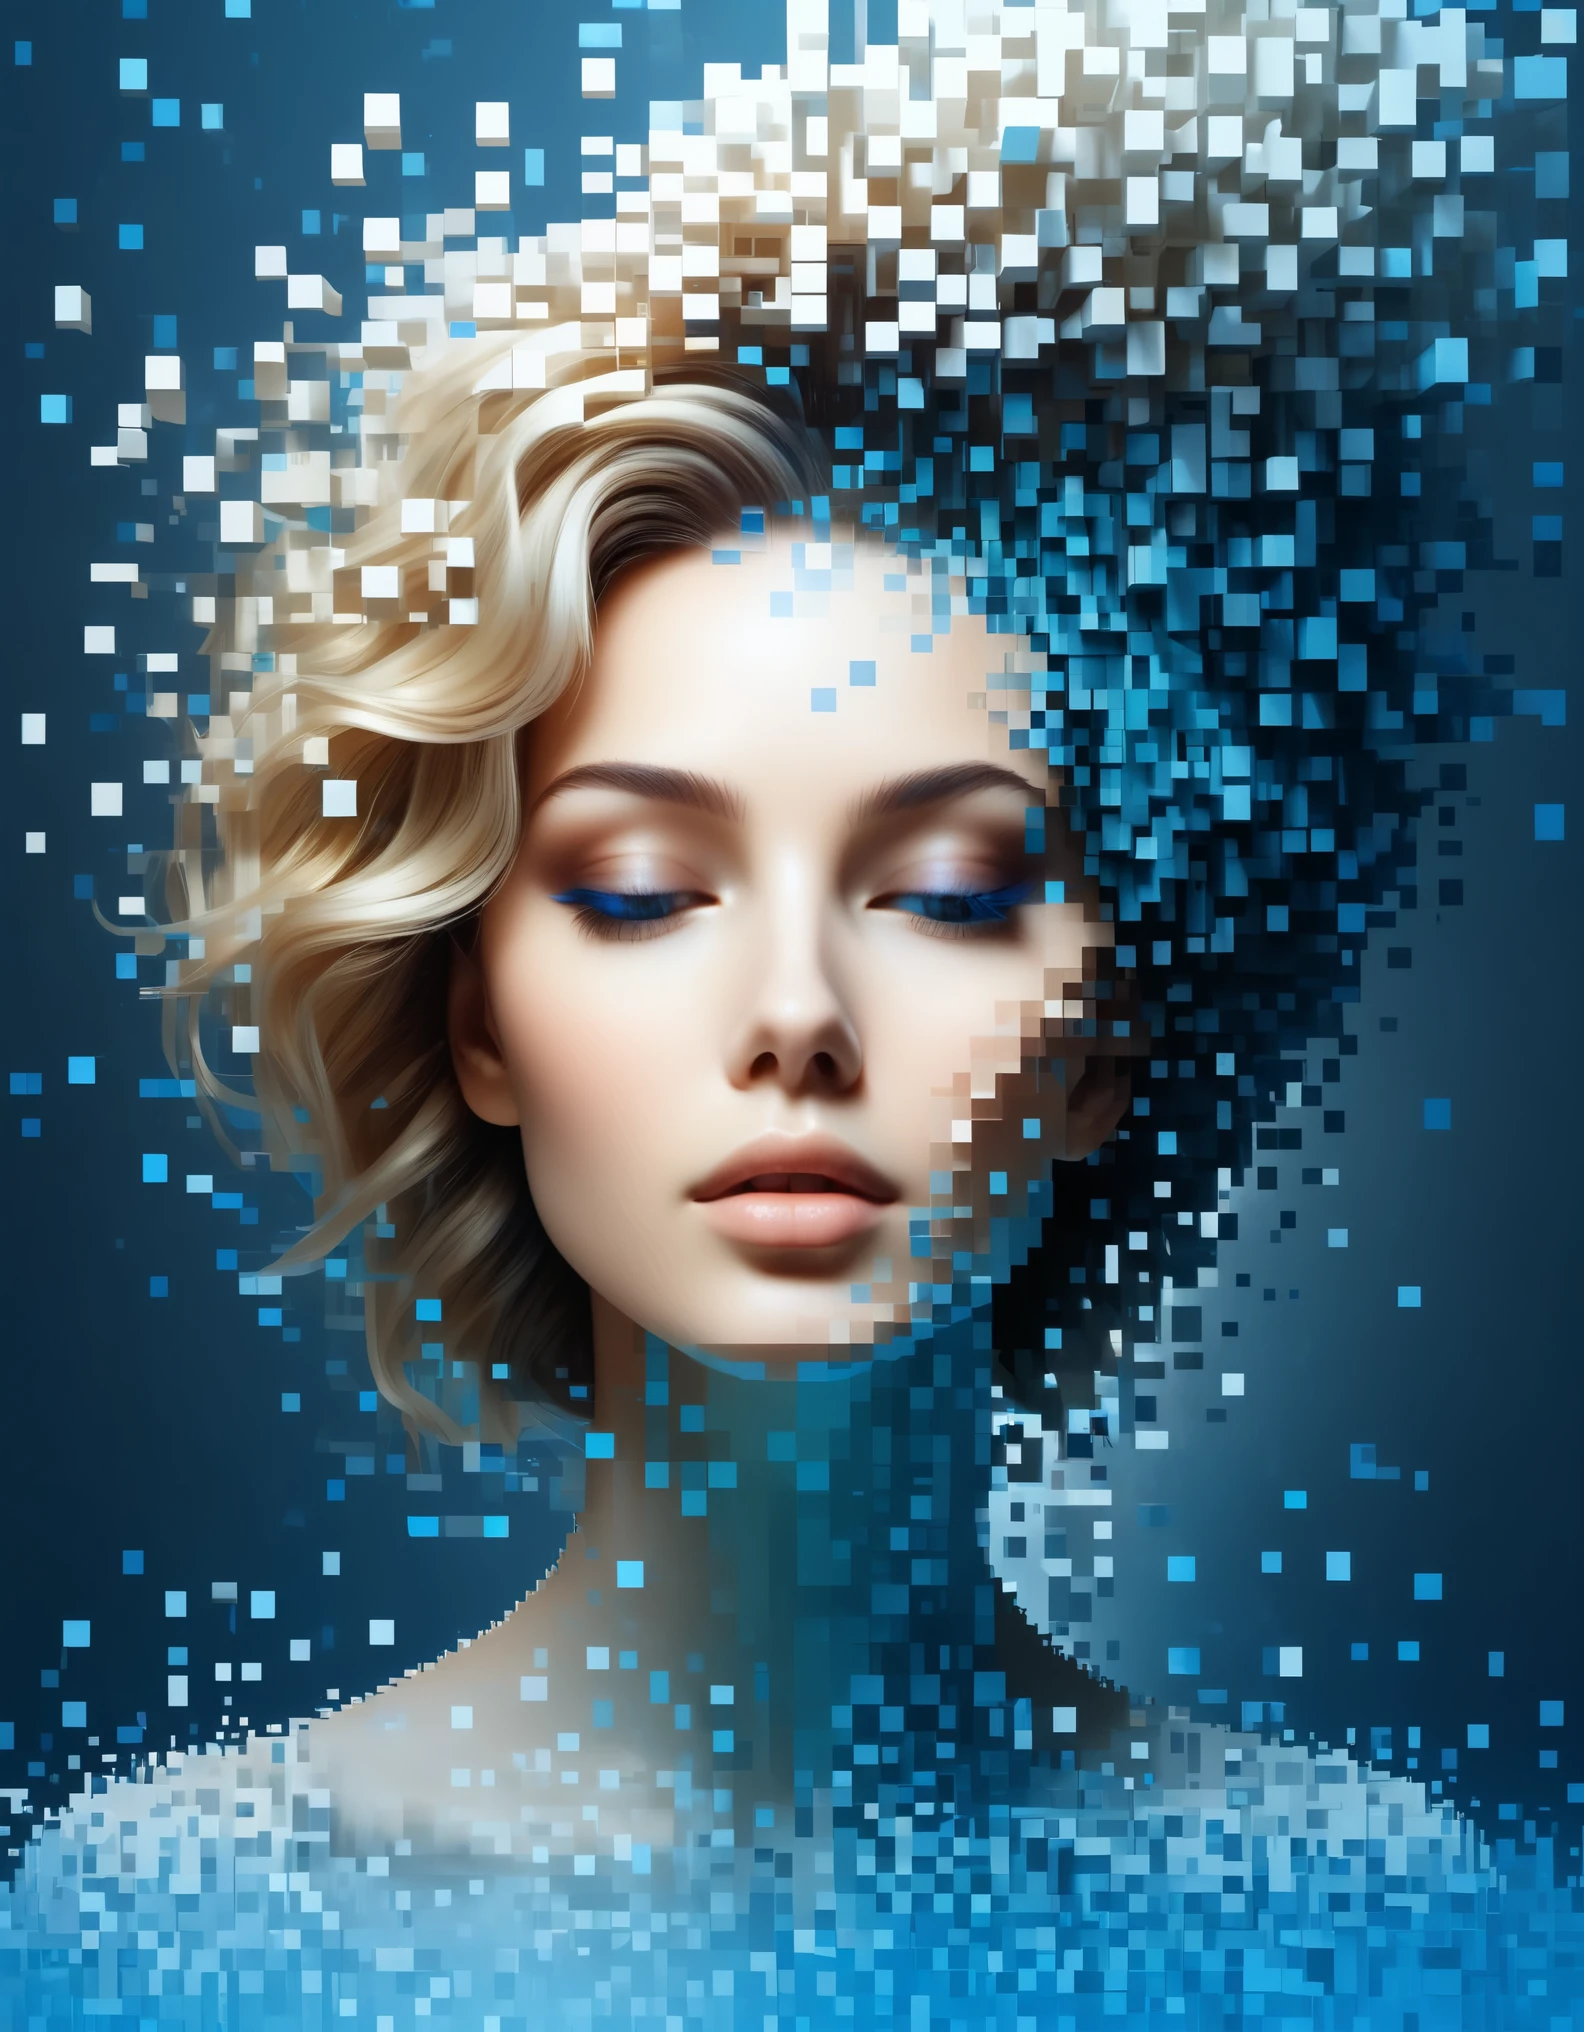 Uma parede de pixel dissolvida em cor gradiente azul de uma linda mulher&#39;cabeça，Blocos de voxel 3D，Uma estrutura que começa intacta, mas gradualmente se desintegra no ar，A luz solar brilha através do parcialmente oco，Espaço holográfico do universo de fundo